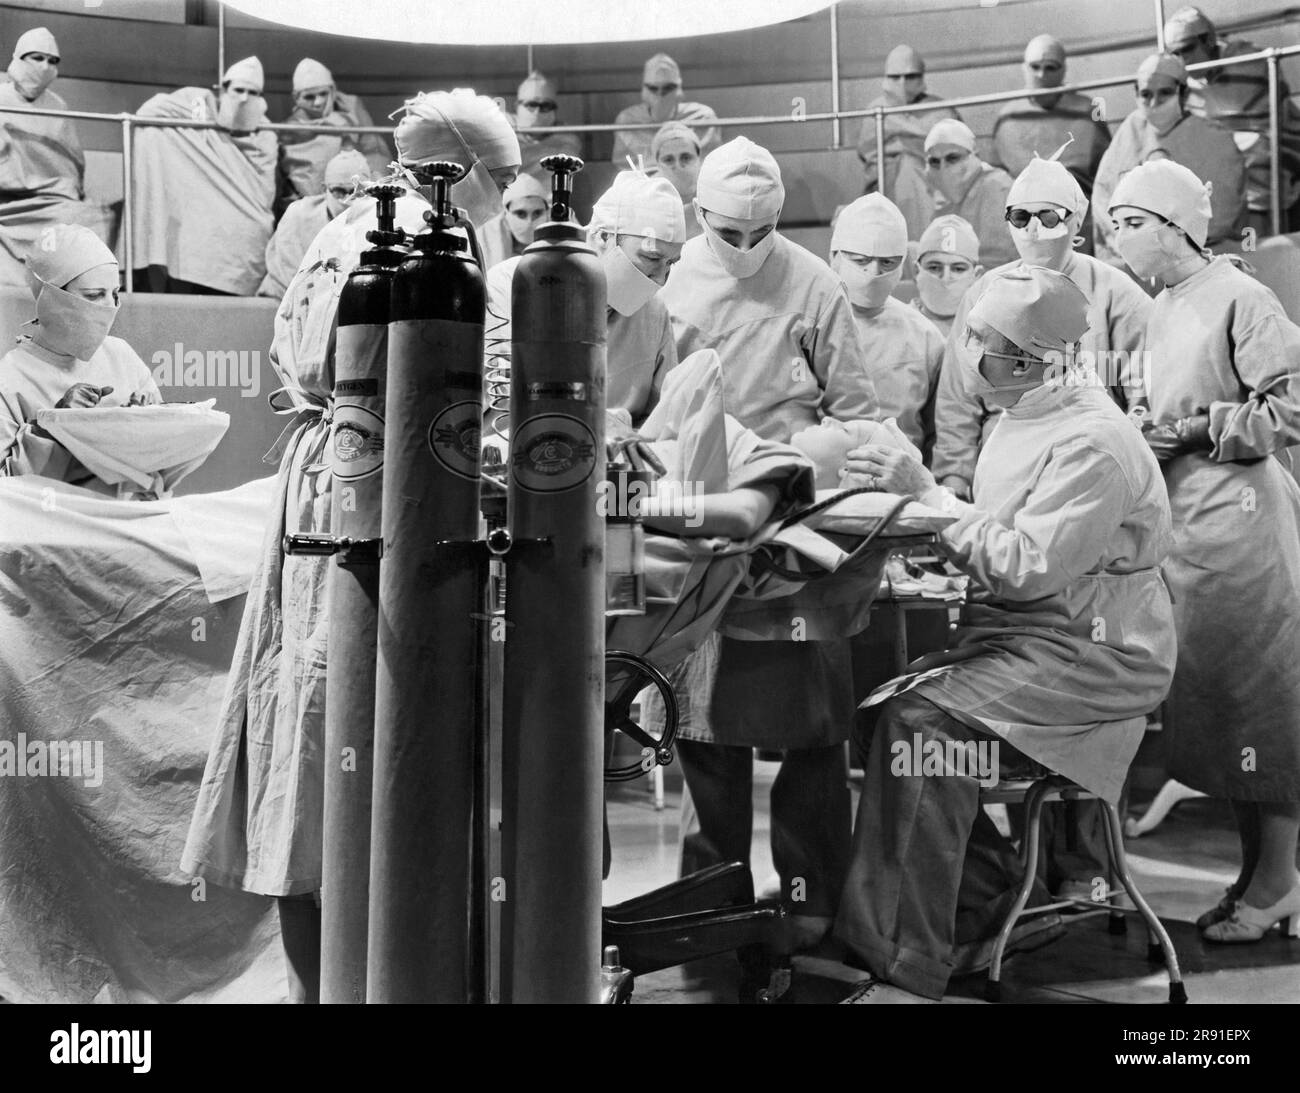 Hollywood, Kalifornien: c. 1930 Ein Film, in dem Medizinstudenten eine chirurgische Operation in einem Krankenhaus beobachten. Stockfoto